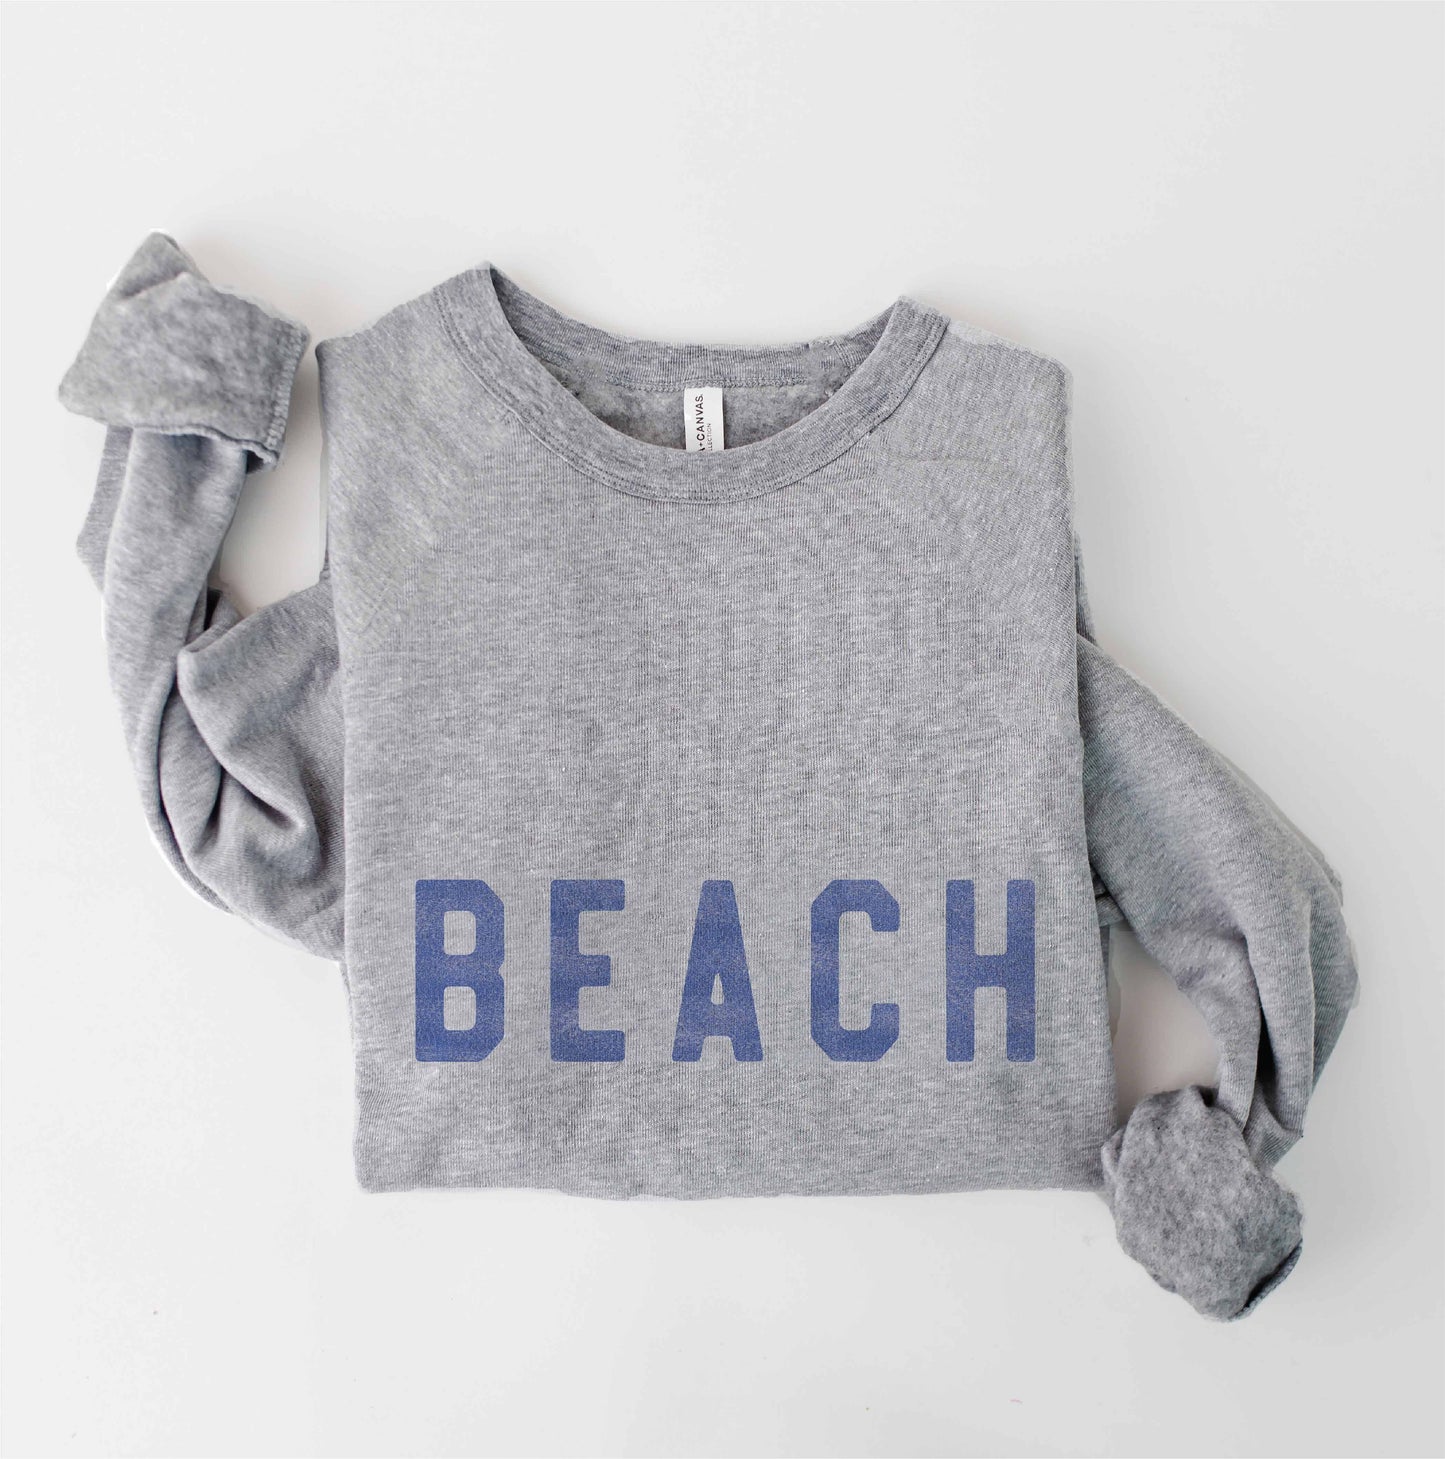 BEACH Graphic Sweatshirt